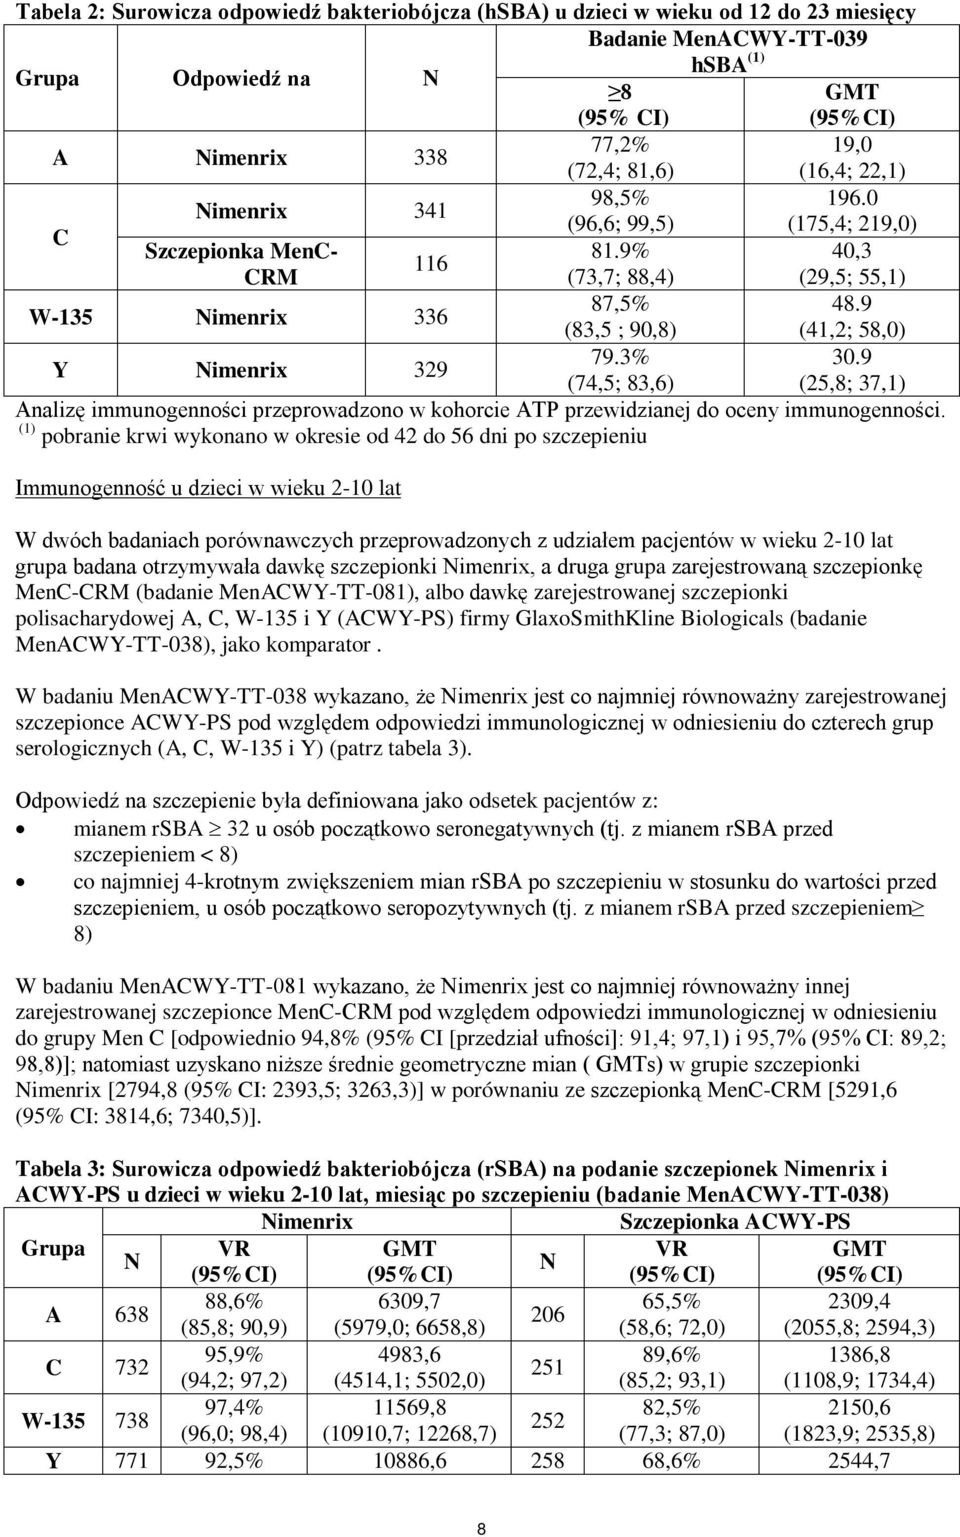 9 (83,5 ; 90,8) (41,2; 58,0) Y imenrix 329 79.3% 30.9 (74,5; 83,6) (25,8; 37,1) Analizę immunogenności przeprowadzono w kohorcie ATP przewidzianej do oceny immunogenności.